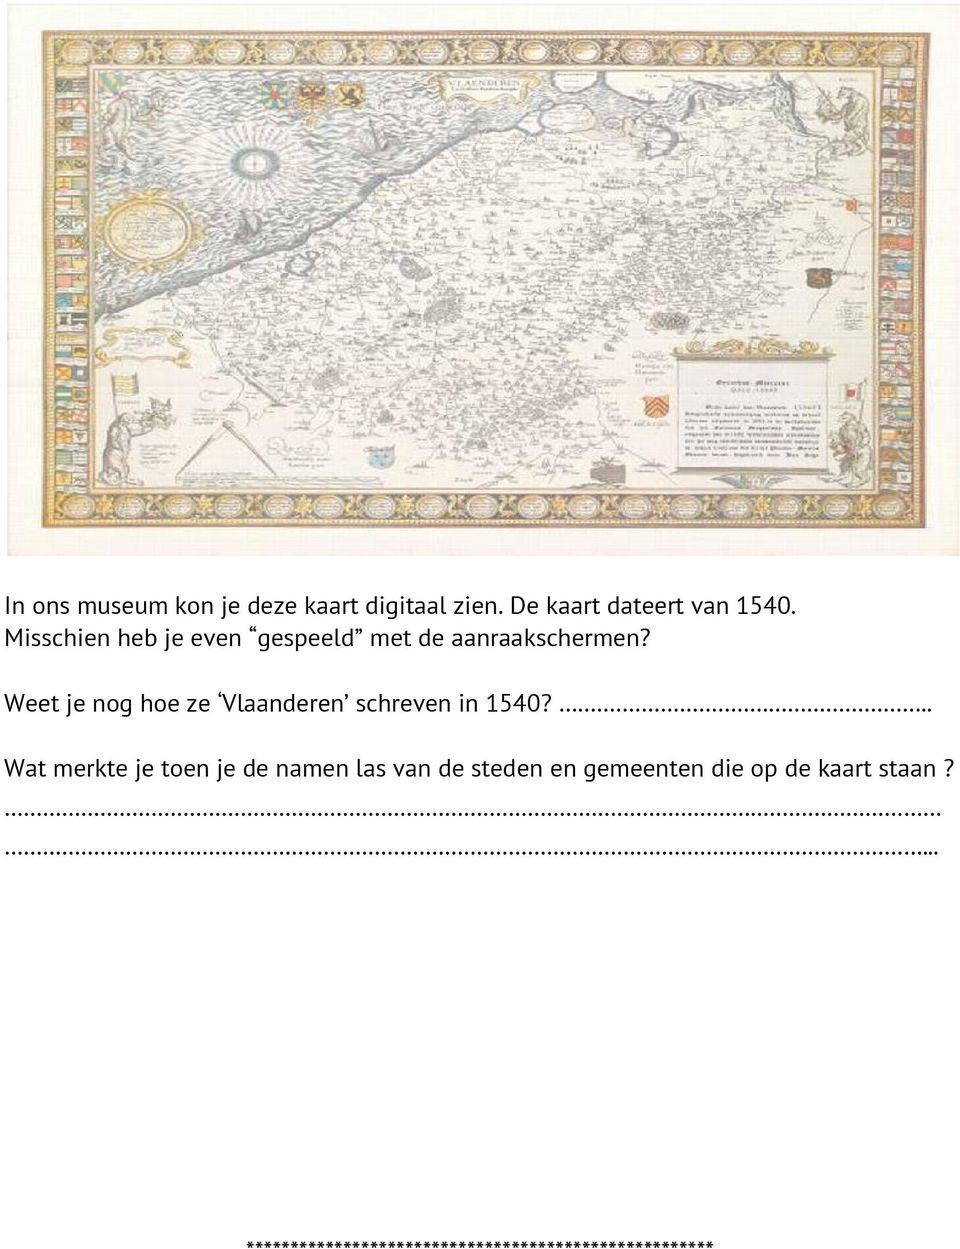 Weet je nog hoe ze Vlaanderen schreven in 1540?